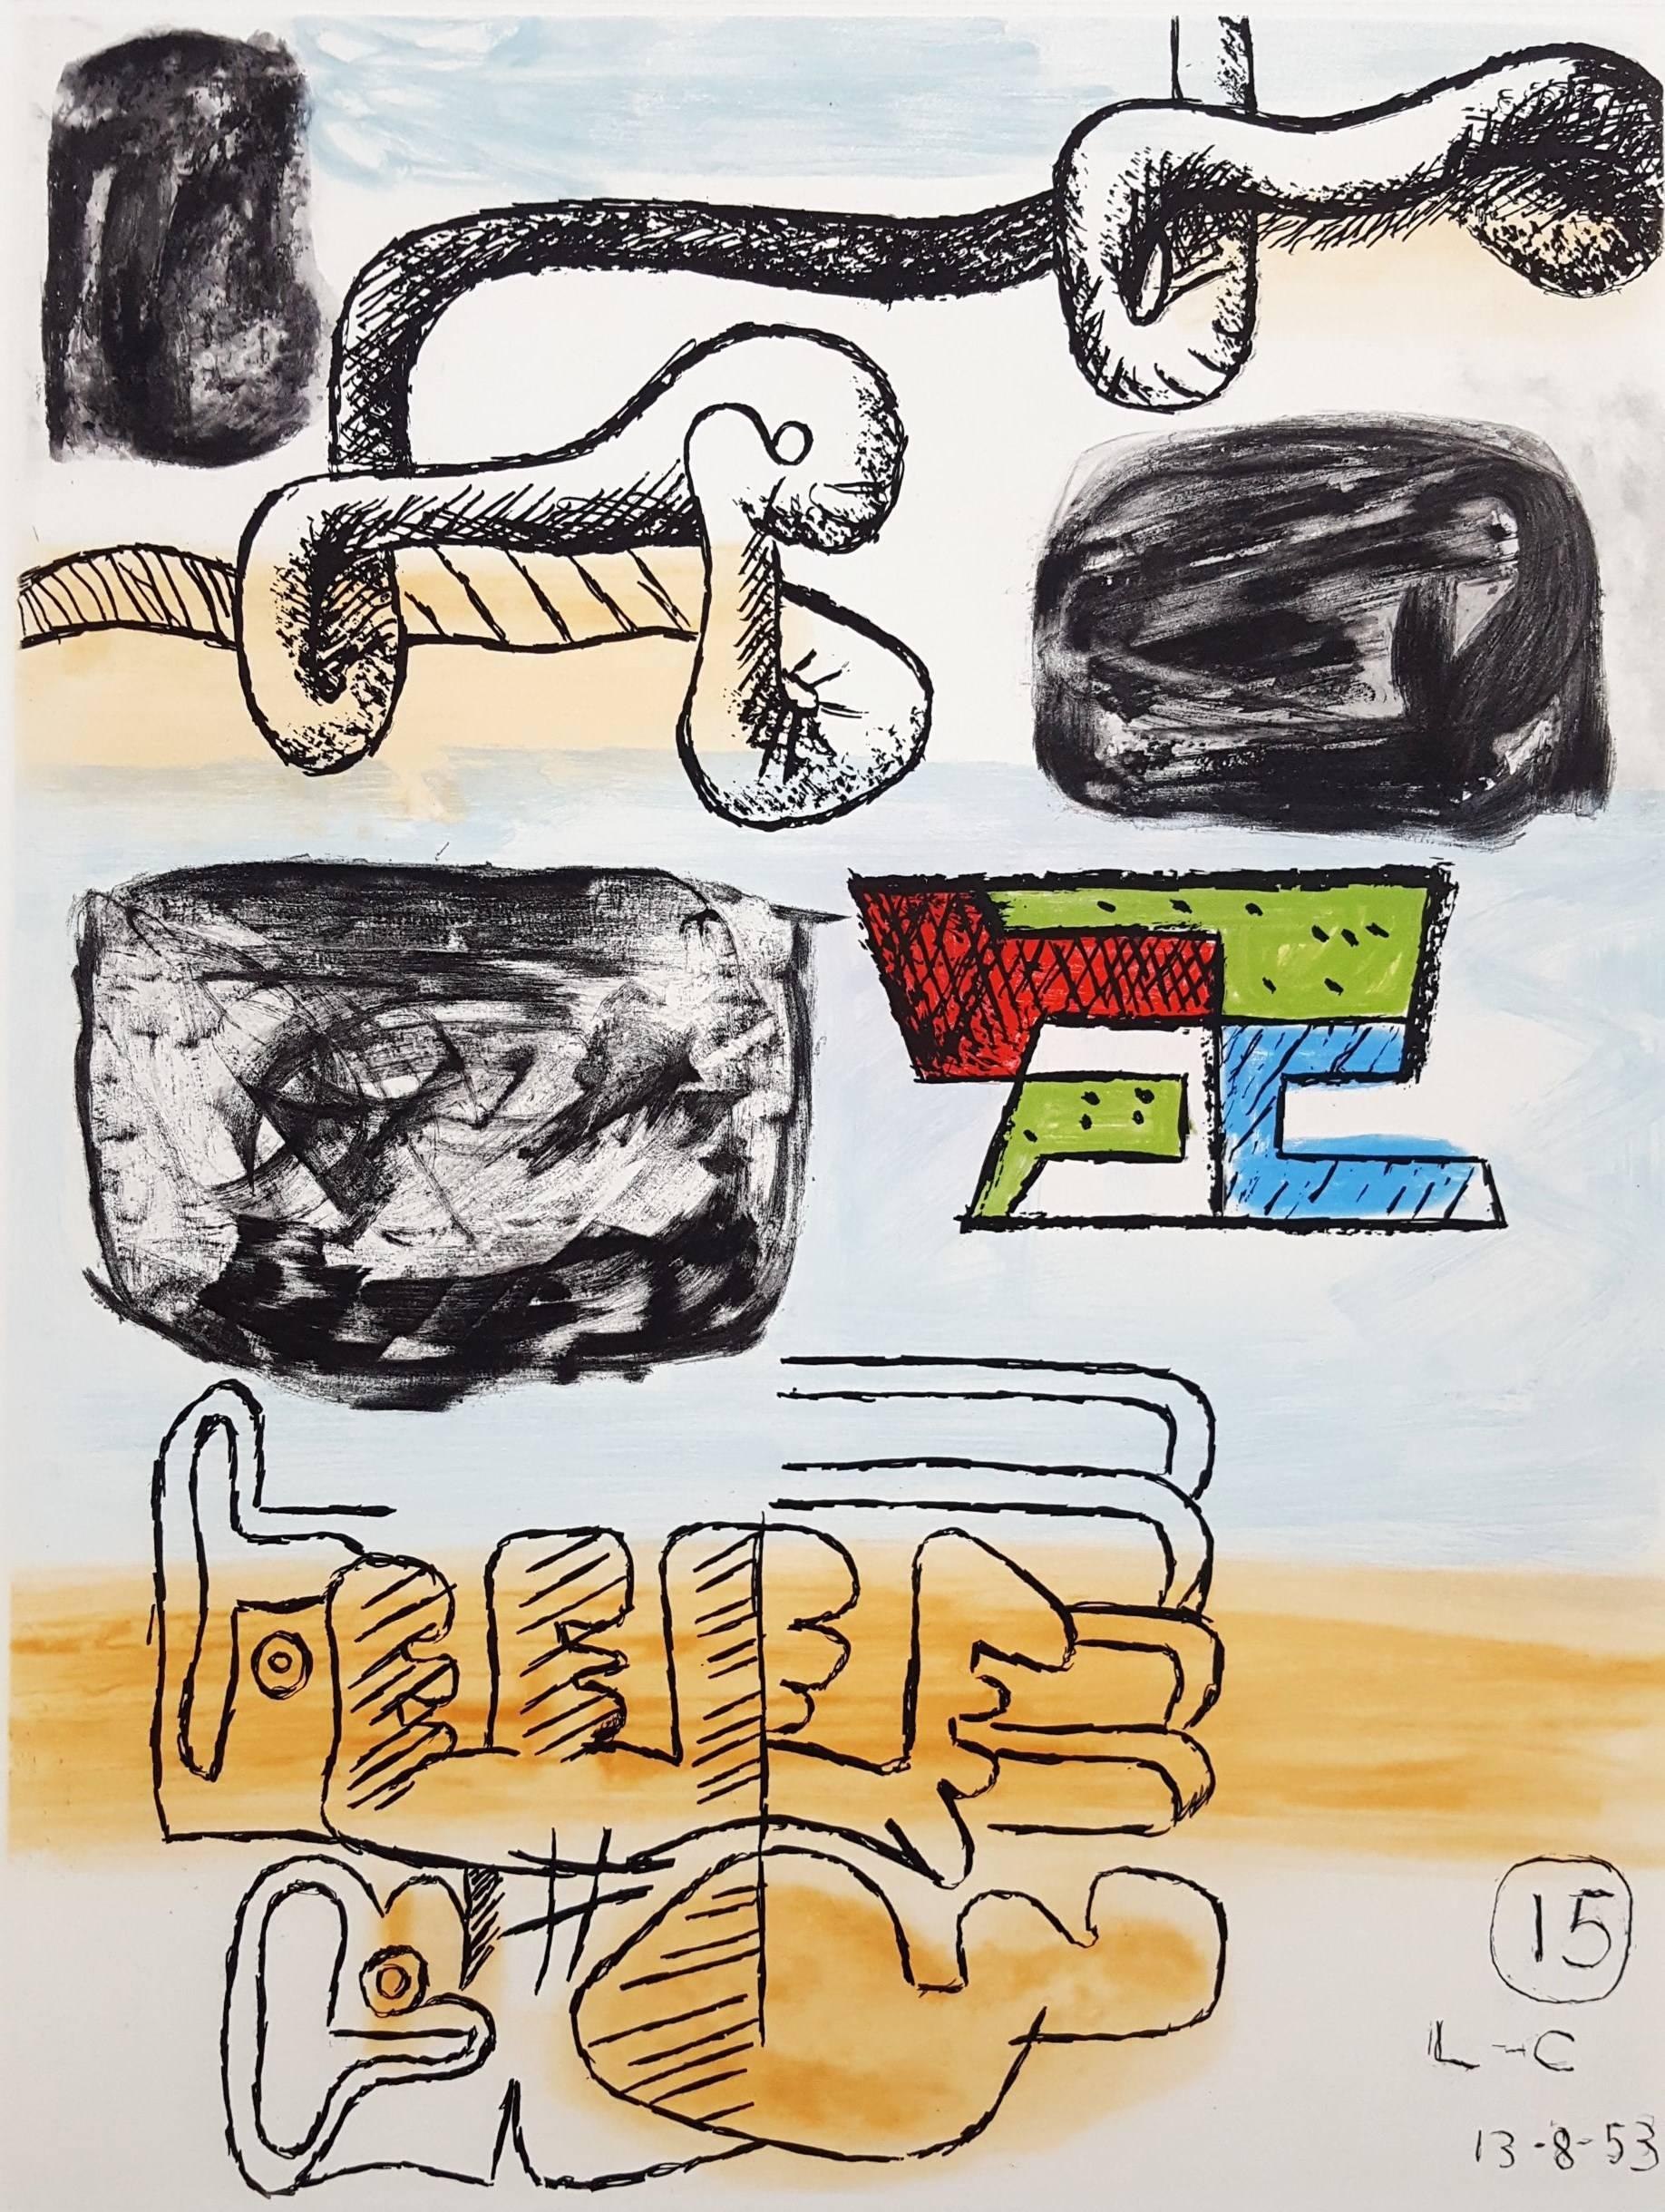 Artistics : Le Corbusier (Charles-Édouard Jeanneret) (franco-suisse, 1887-1965)
Titre : " Unité, Planche 15 " (Lot de 2)
Portefeuille : Unité
*Signé par Le Corbusier au crayon en bas à droite. Il est également signé d'un monogramme et daté dans la